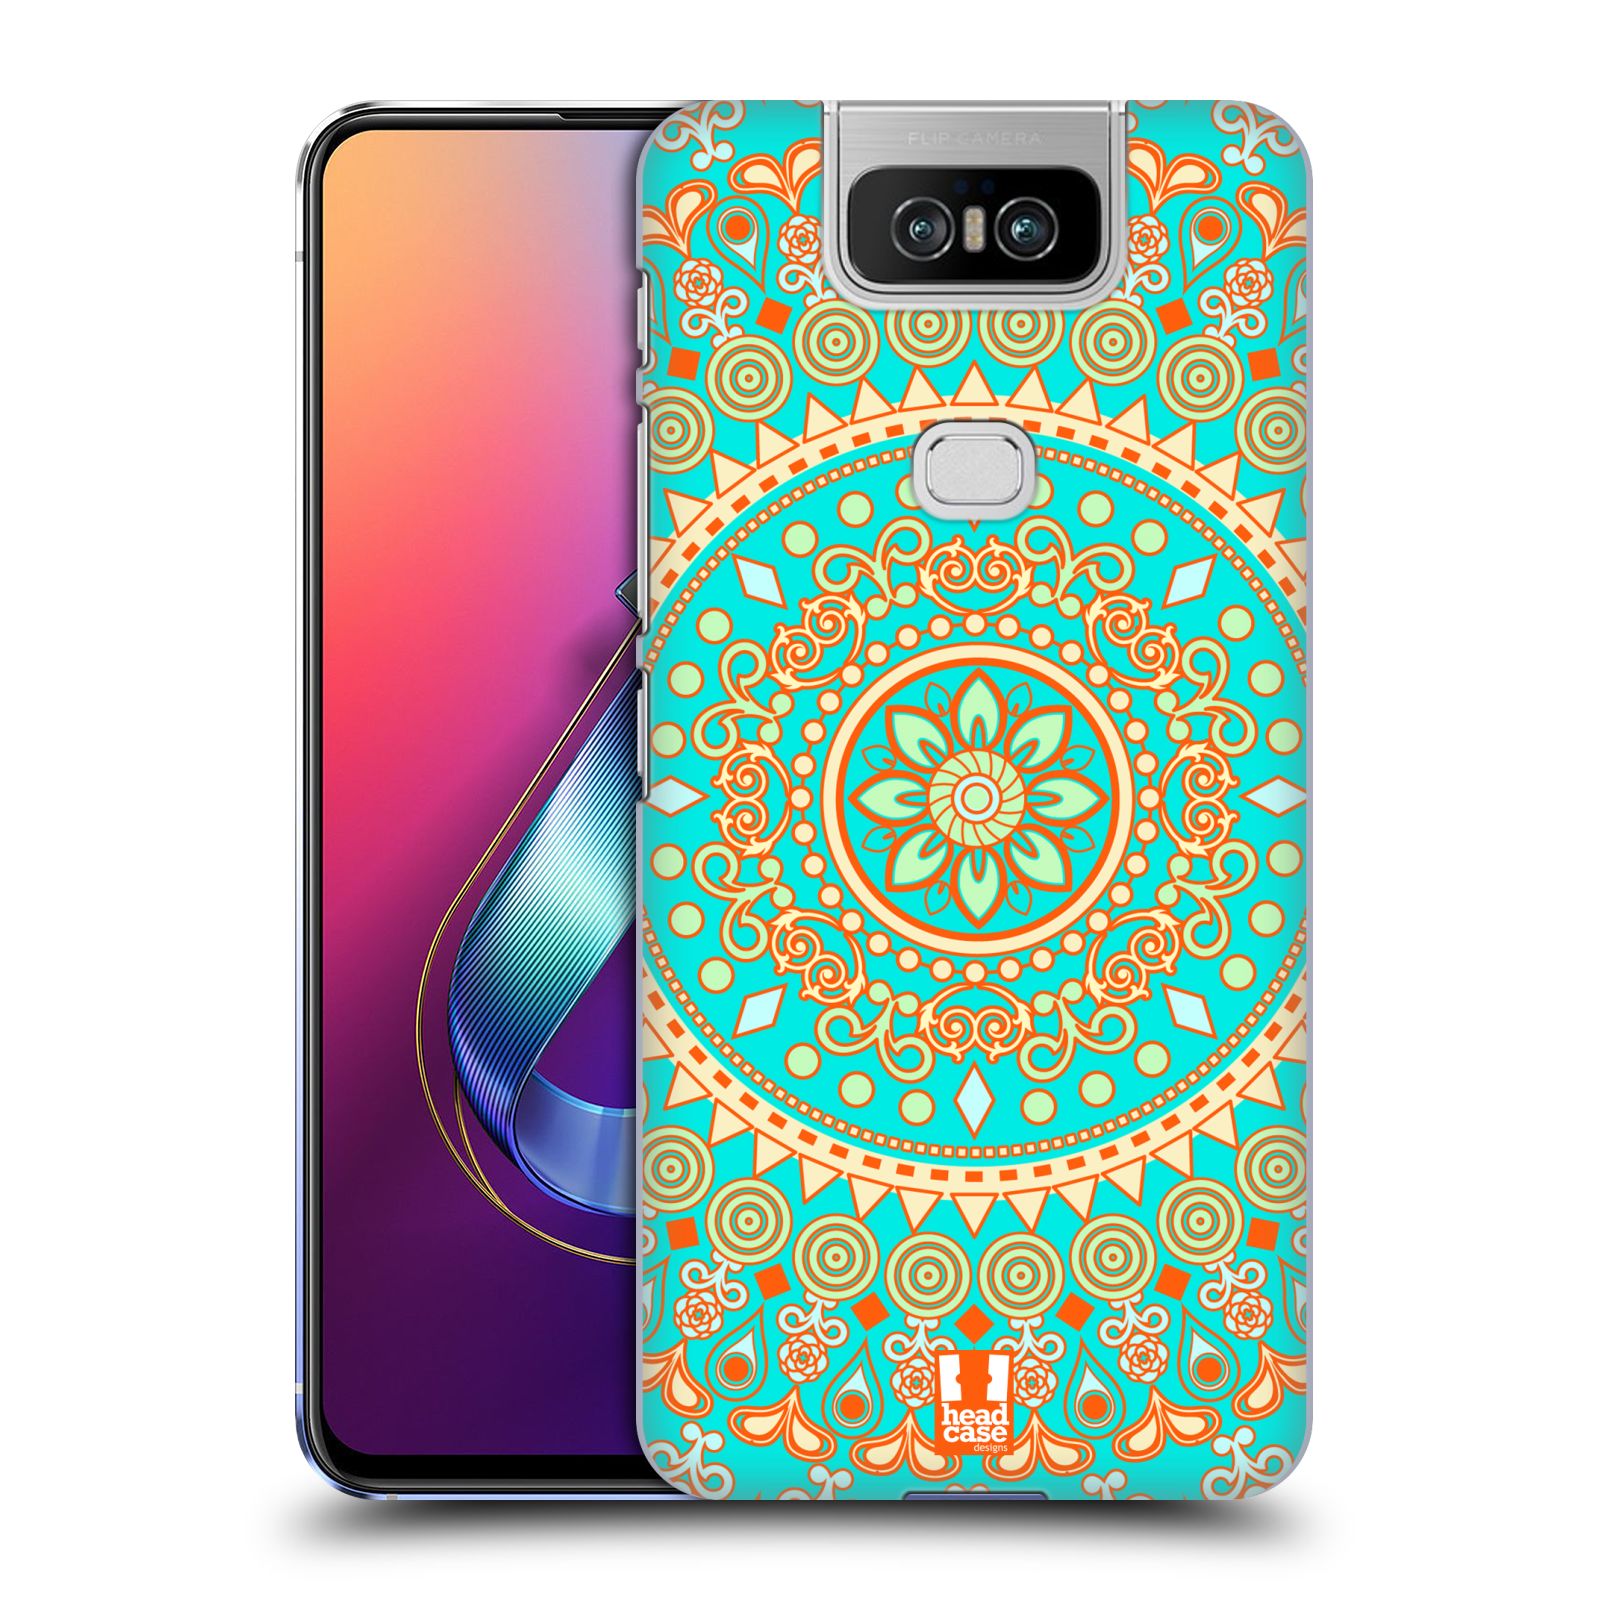 Pouzdro na mobil Asus Zenfone 6 ZS630KL - HEAD CASE - vzor Indie Mandala slunce barevný motiv TYRKYSOVÁ, ZELENÁ